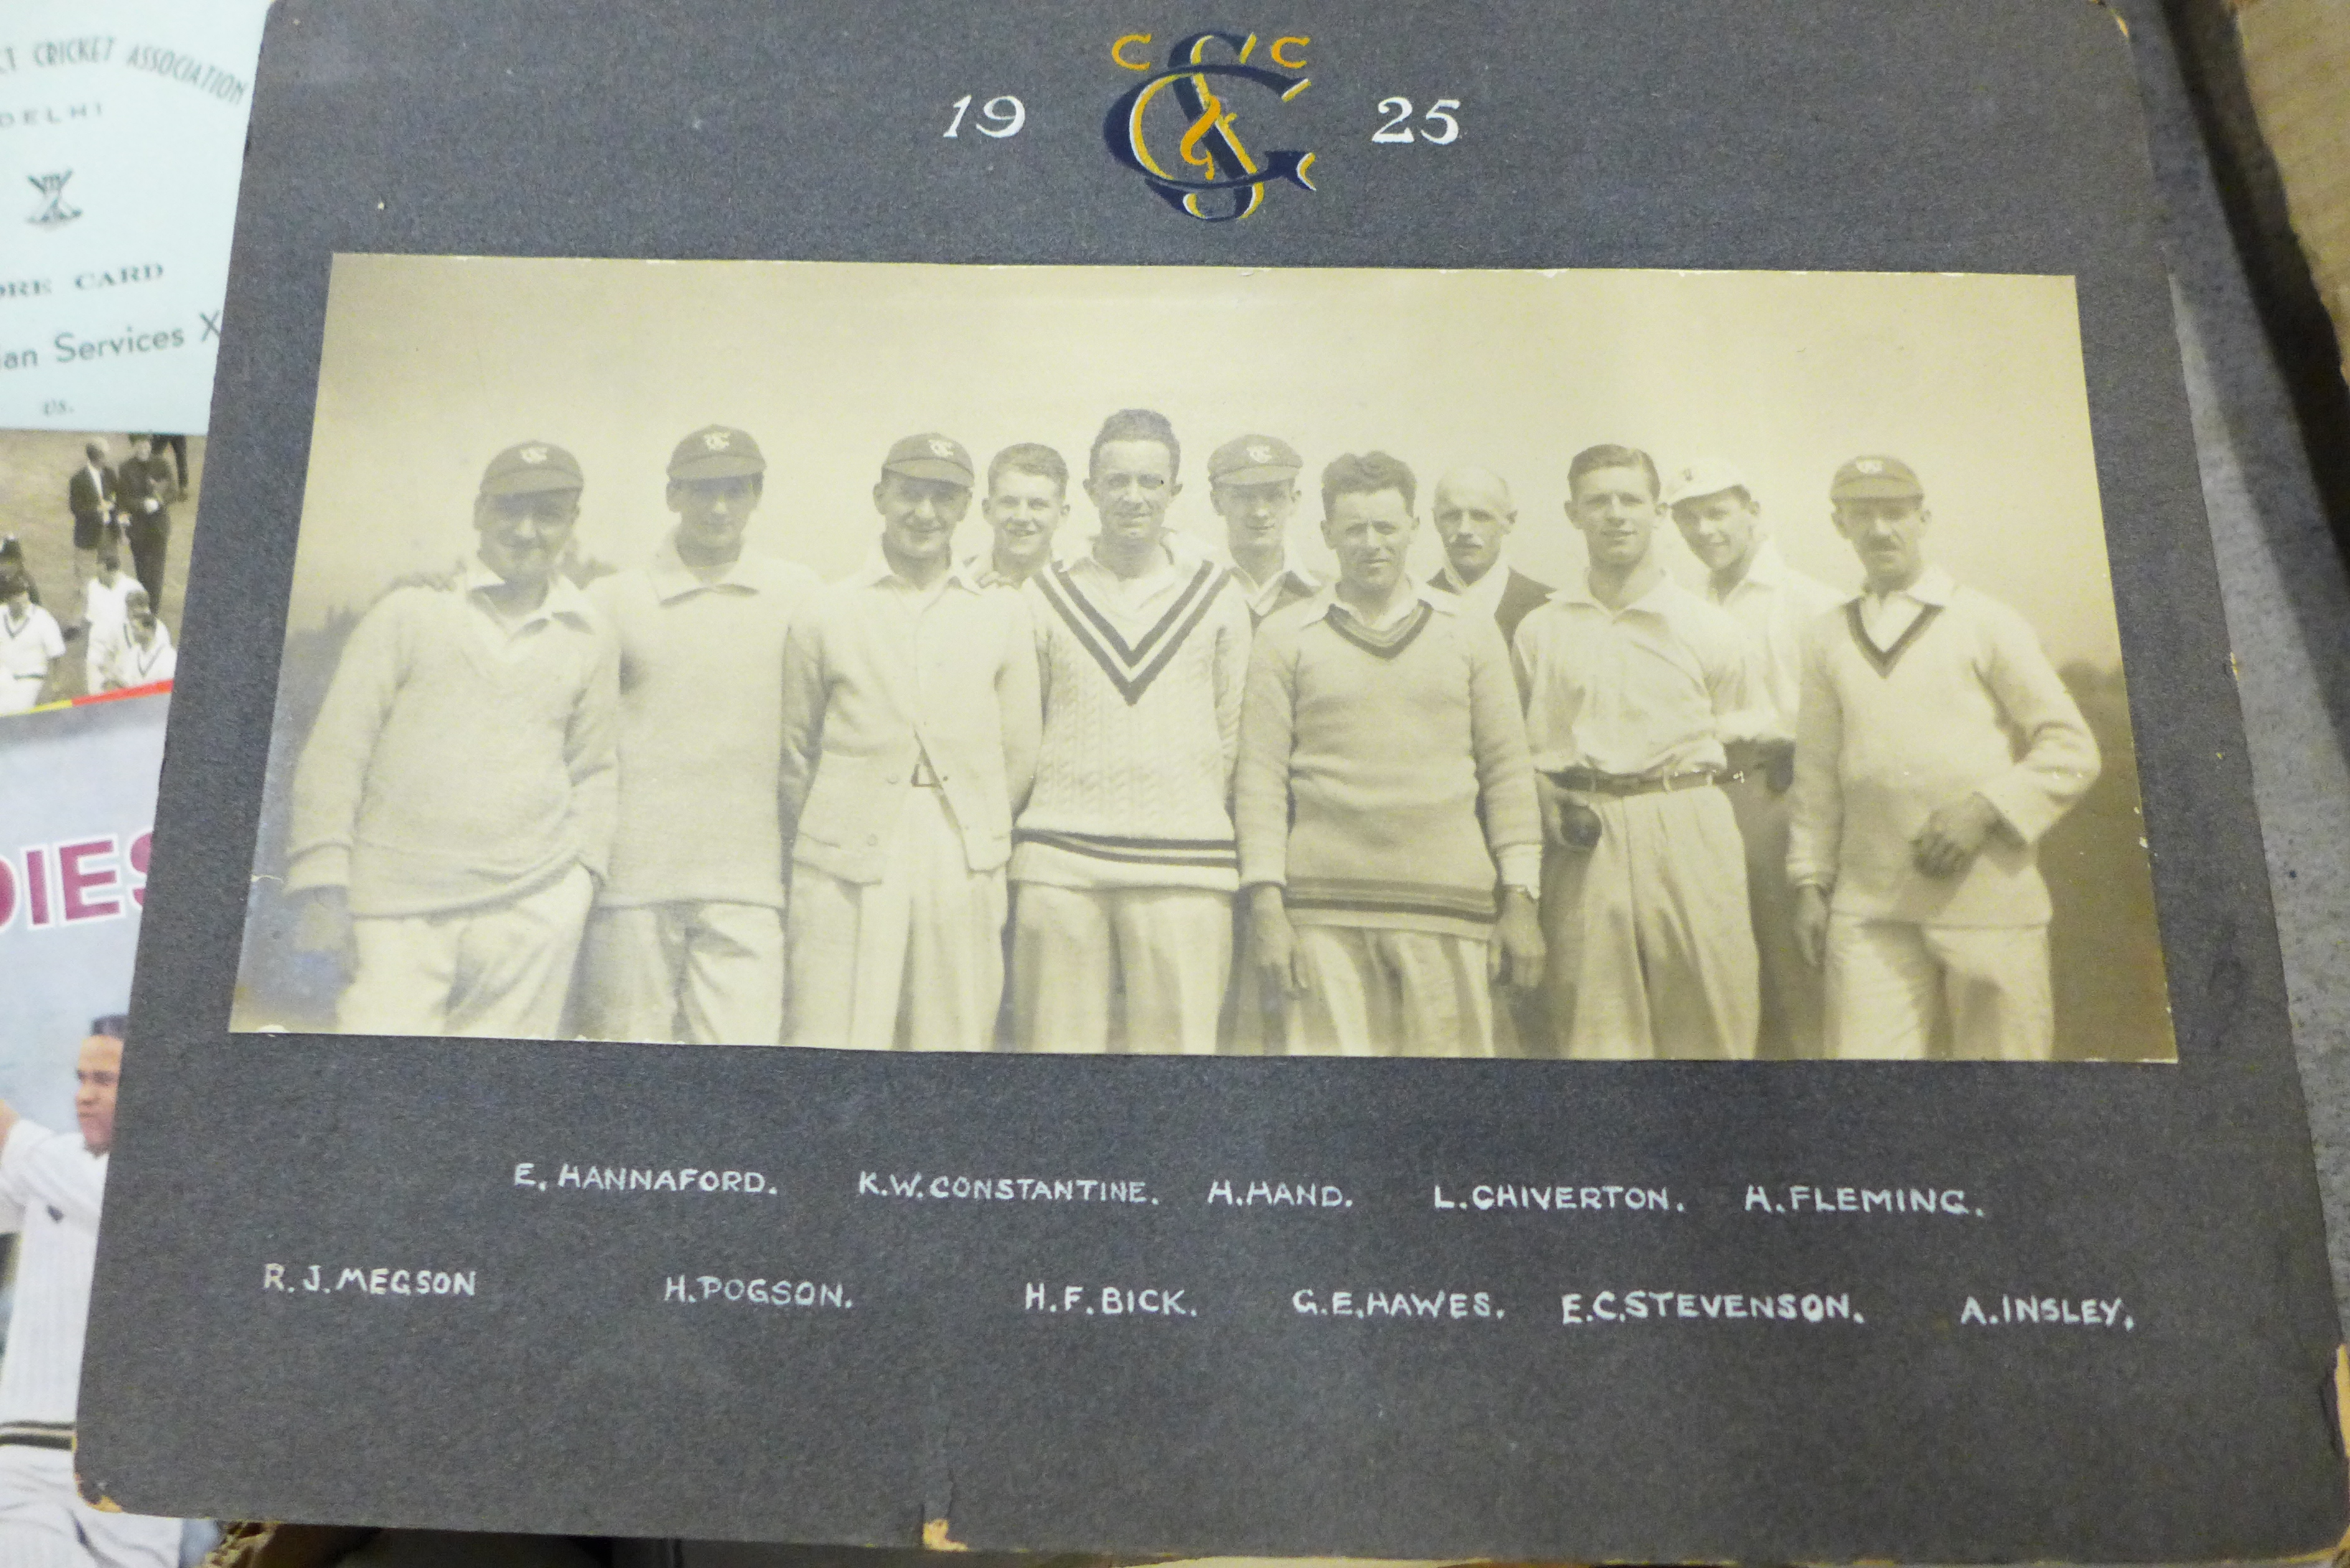 Cricket ephemera, scrapbooks with autographs, score books, etc., 1940s onward - Image 11 of 17